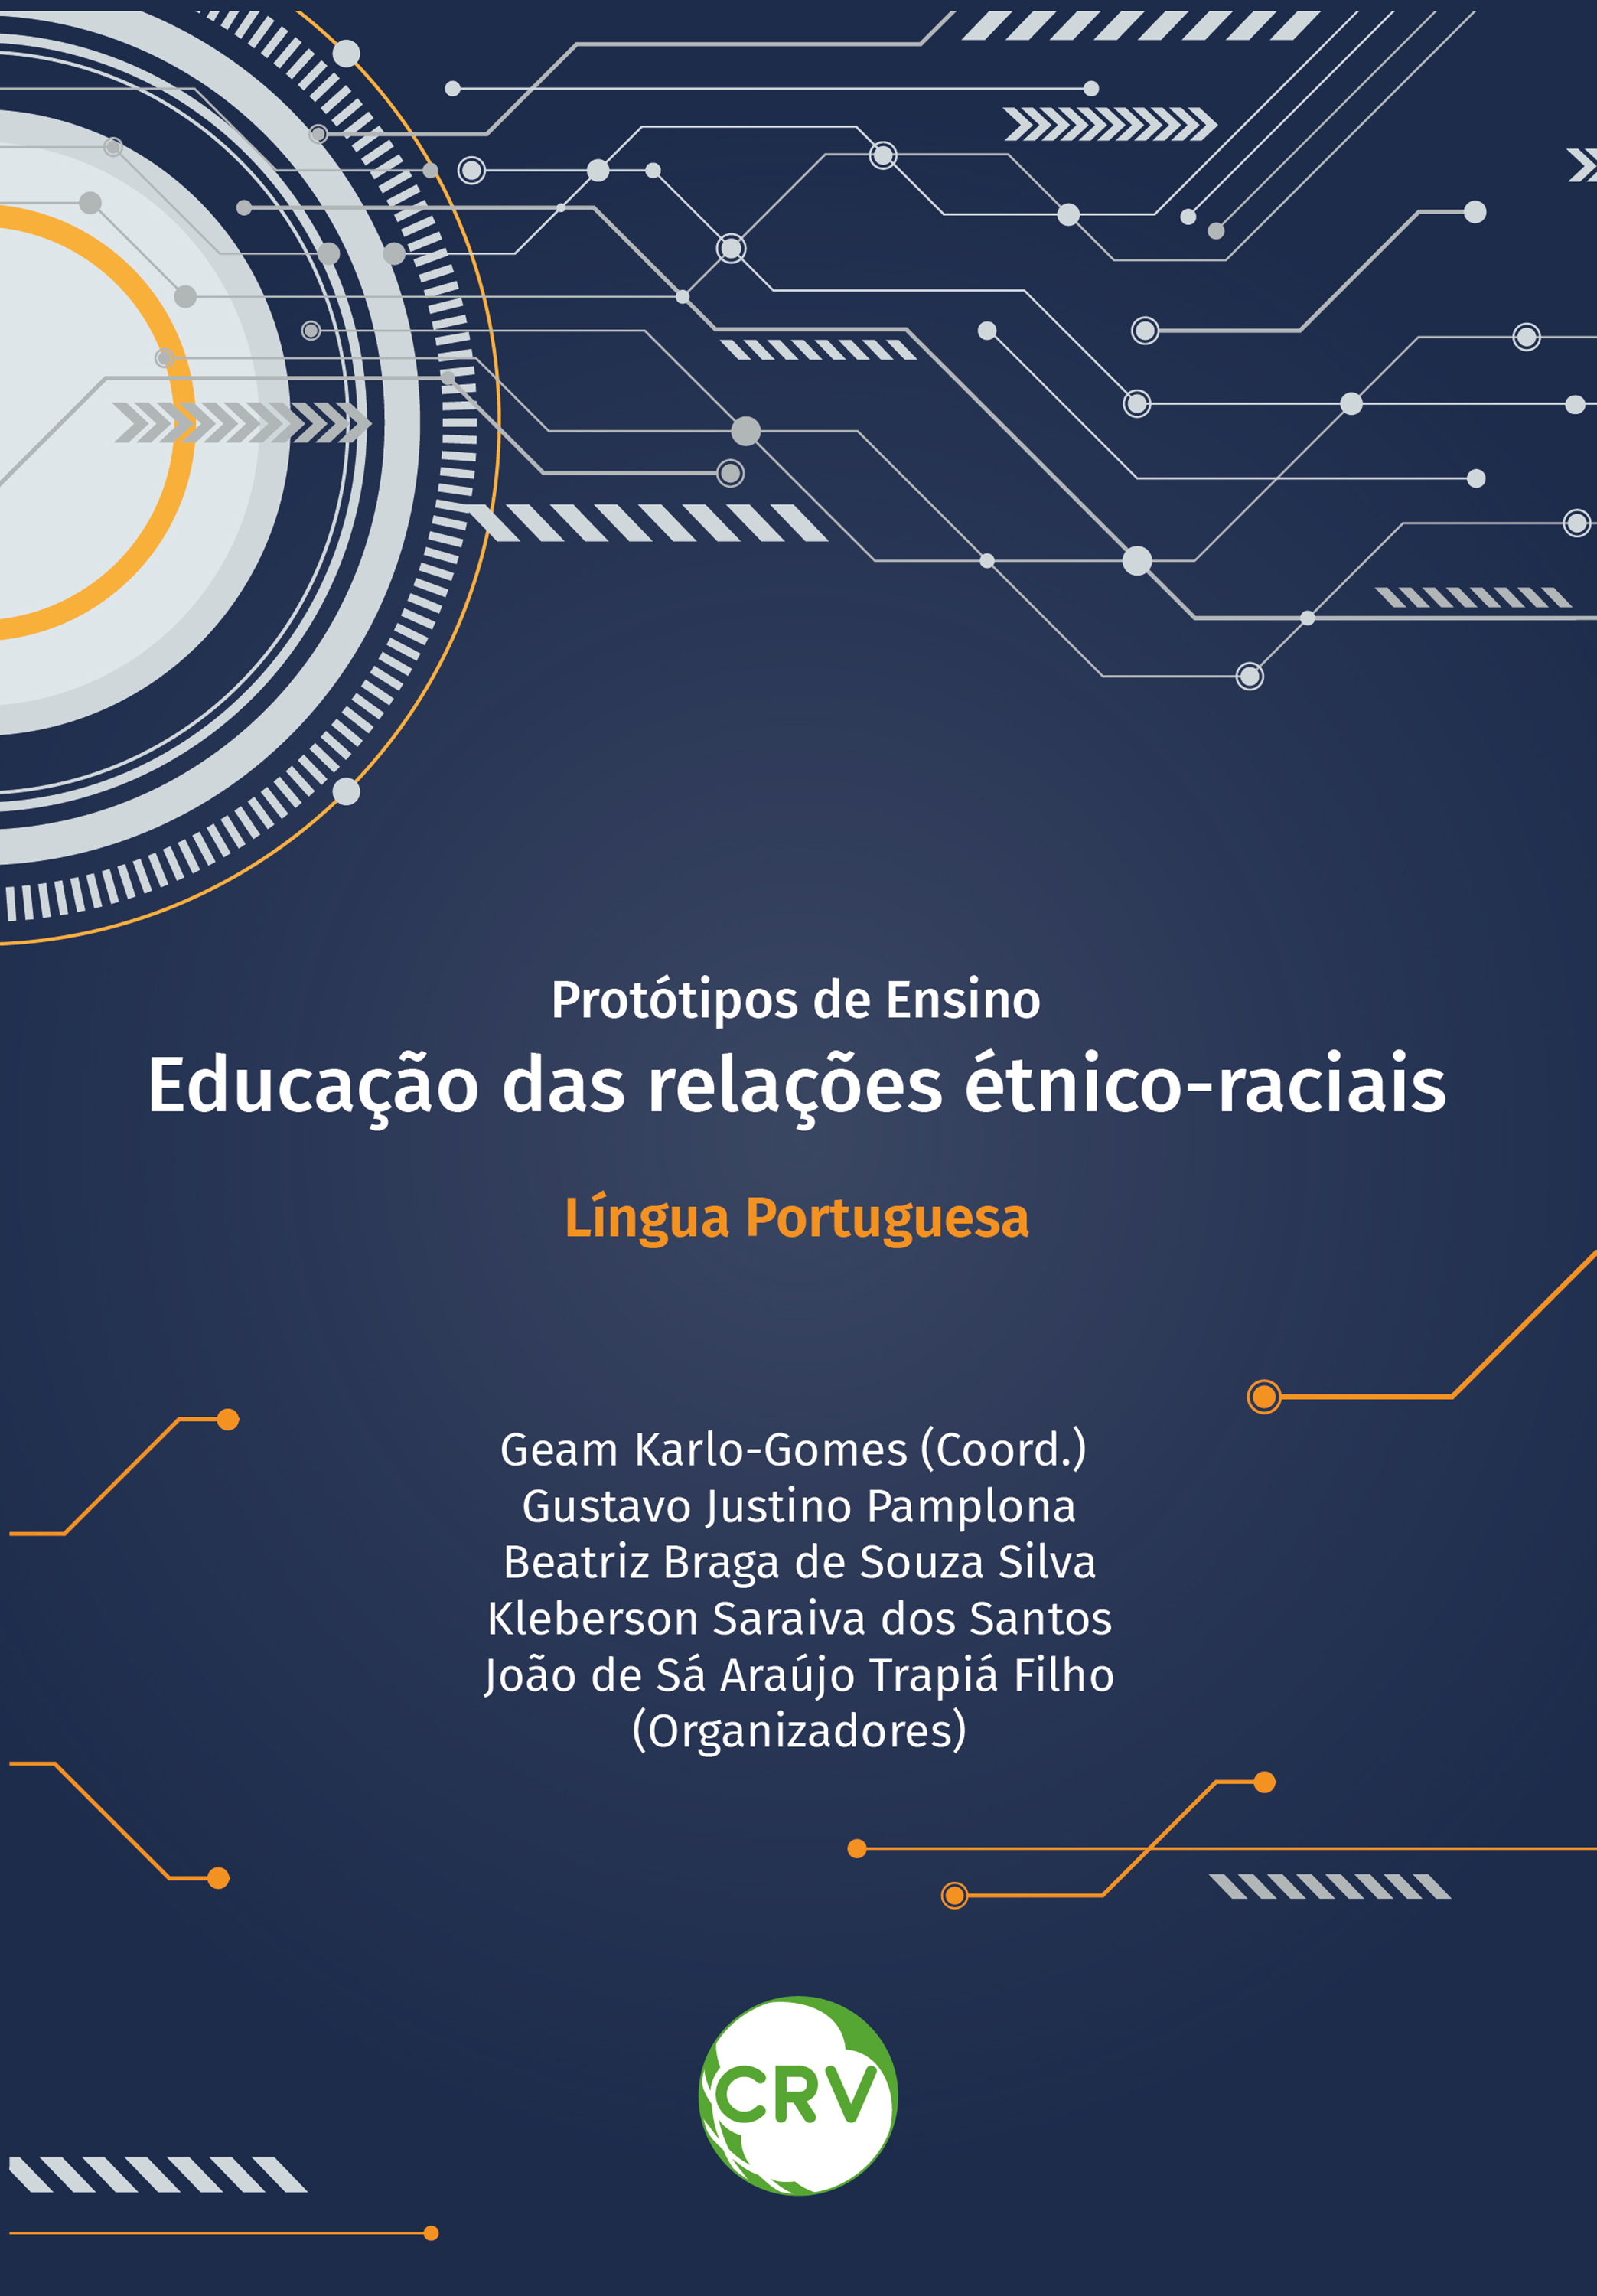 Protótipos de ensino educação das relações étnico-raciais